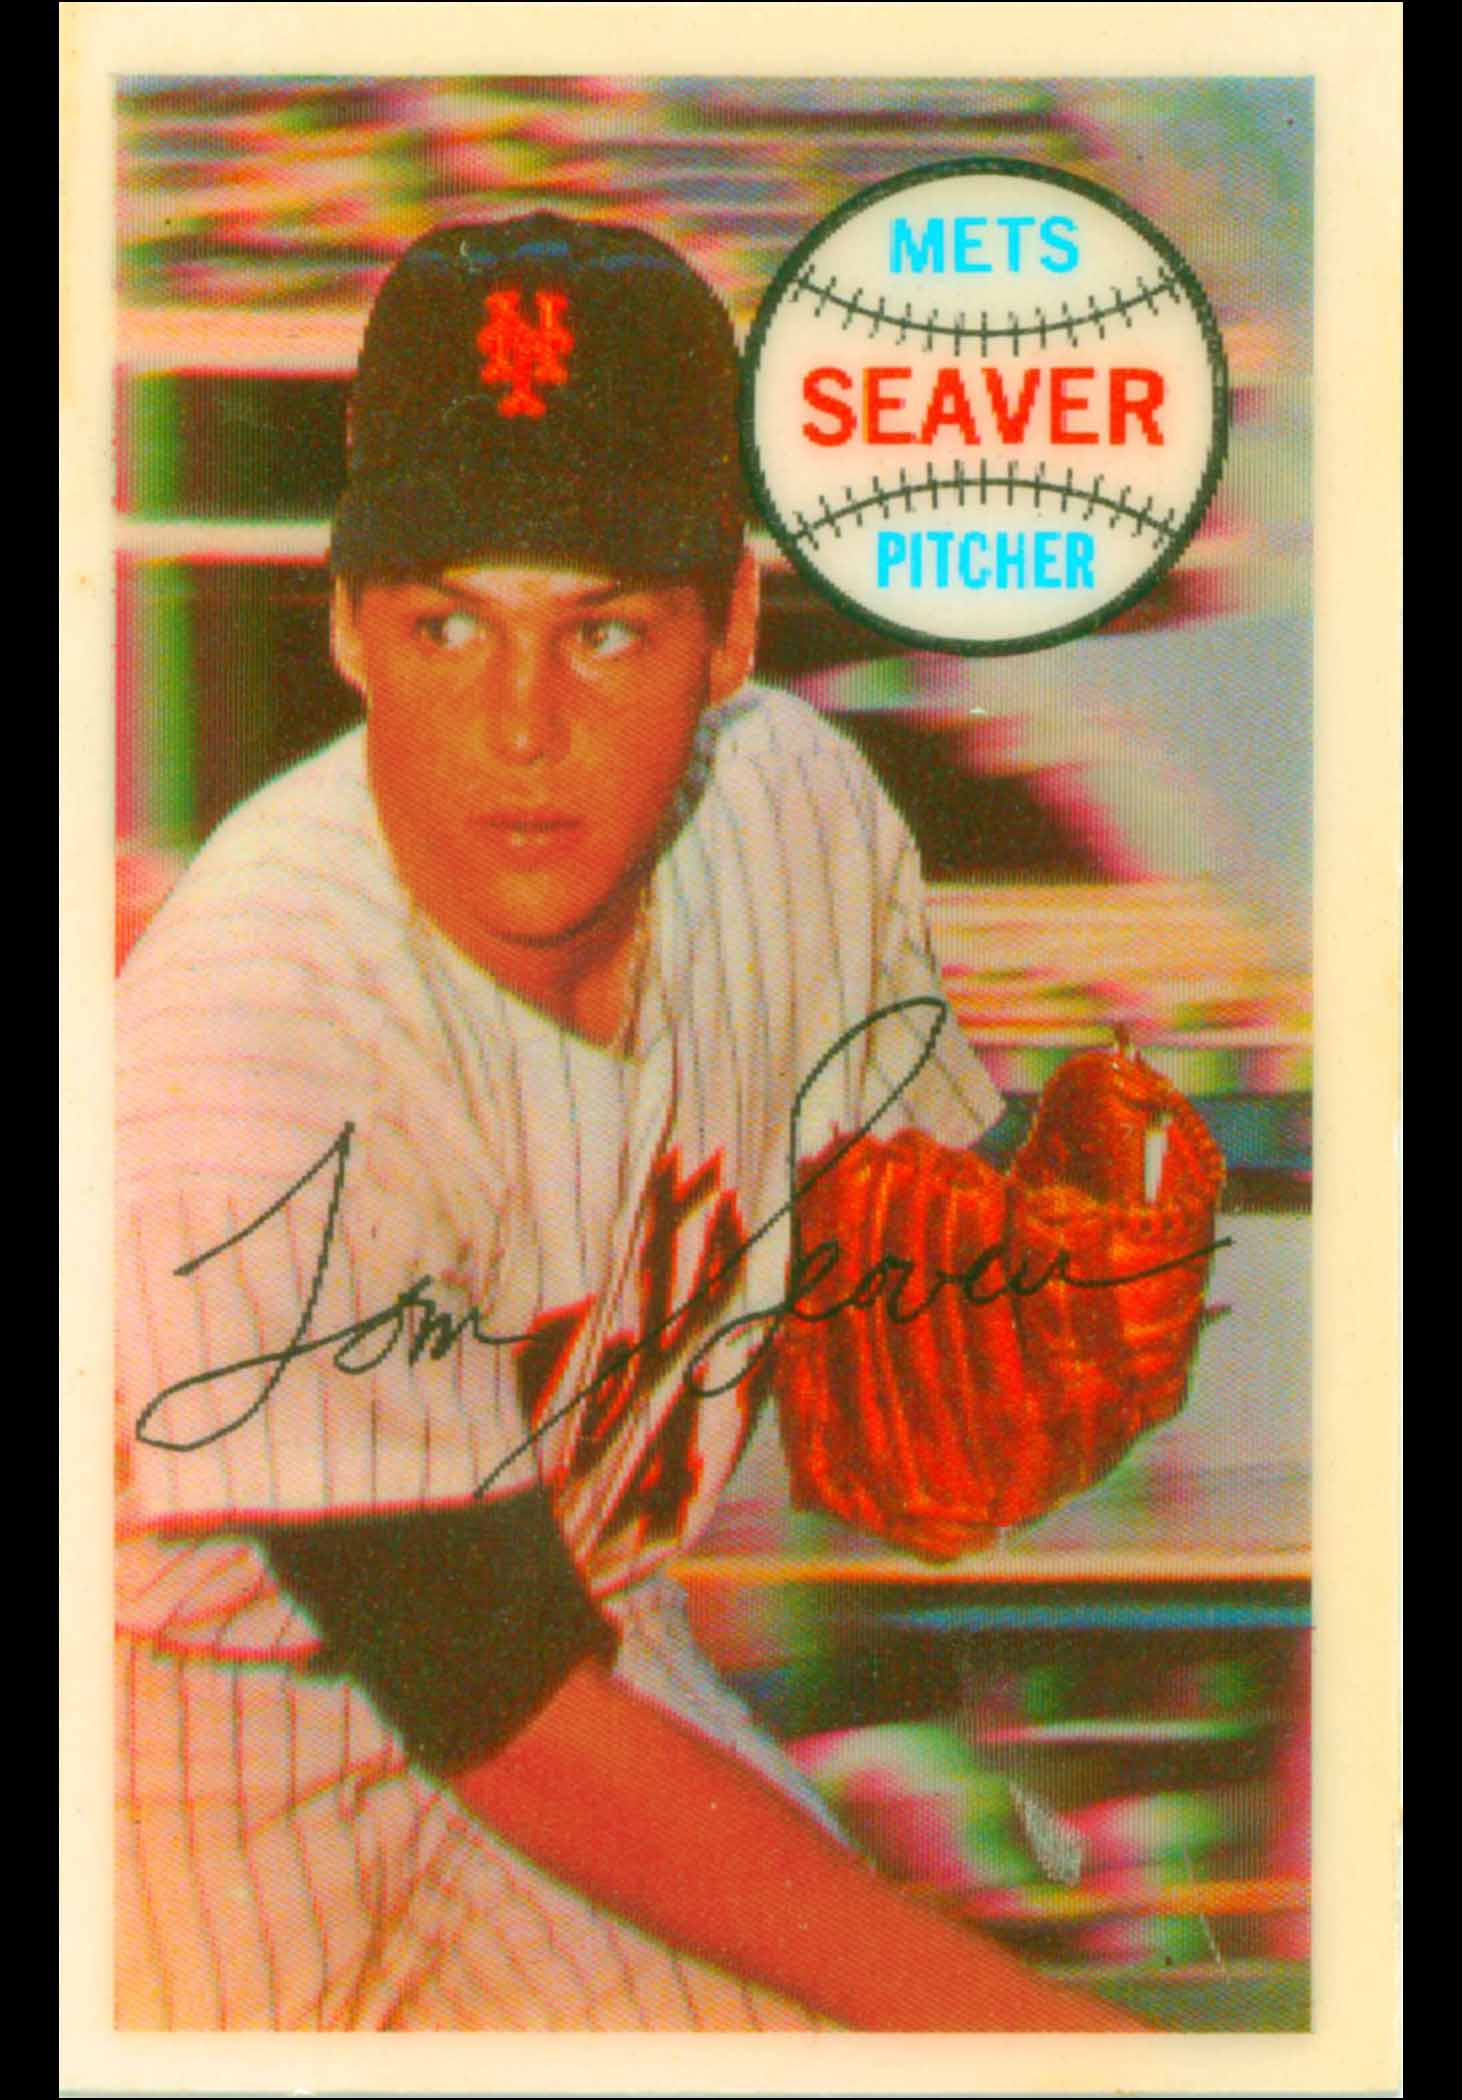 Tom Seaver White Sox 1986 Fleer Future Hall of Famer Signed